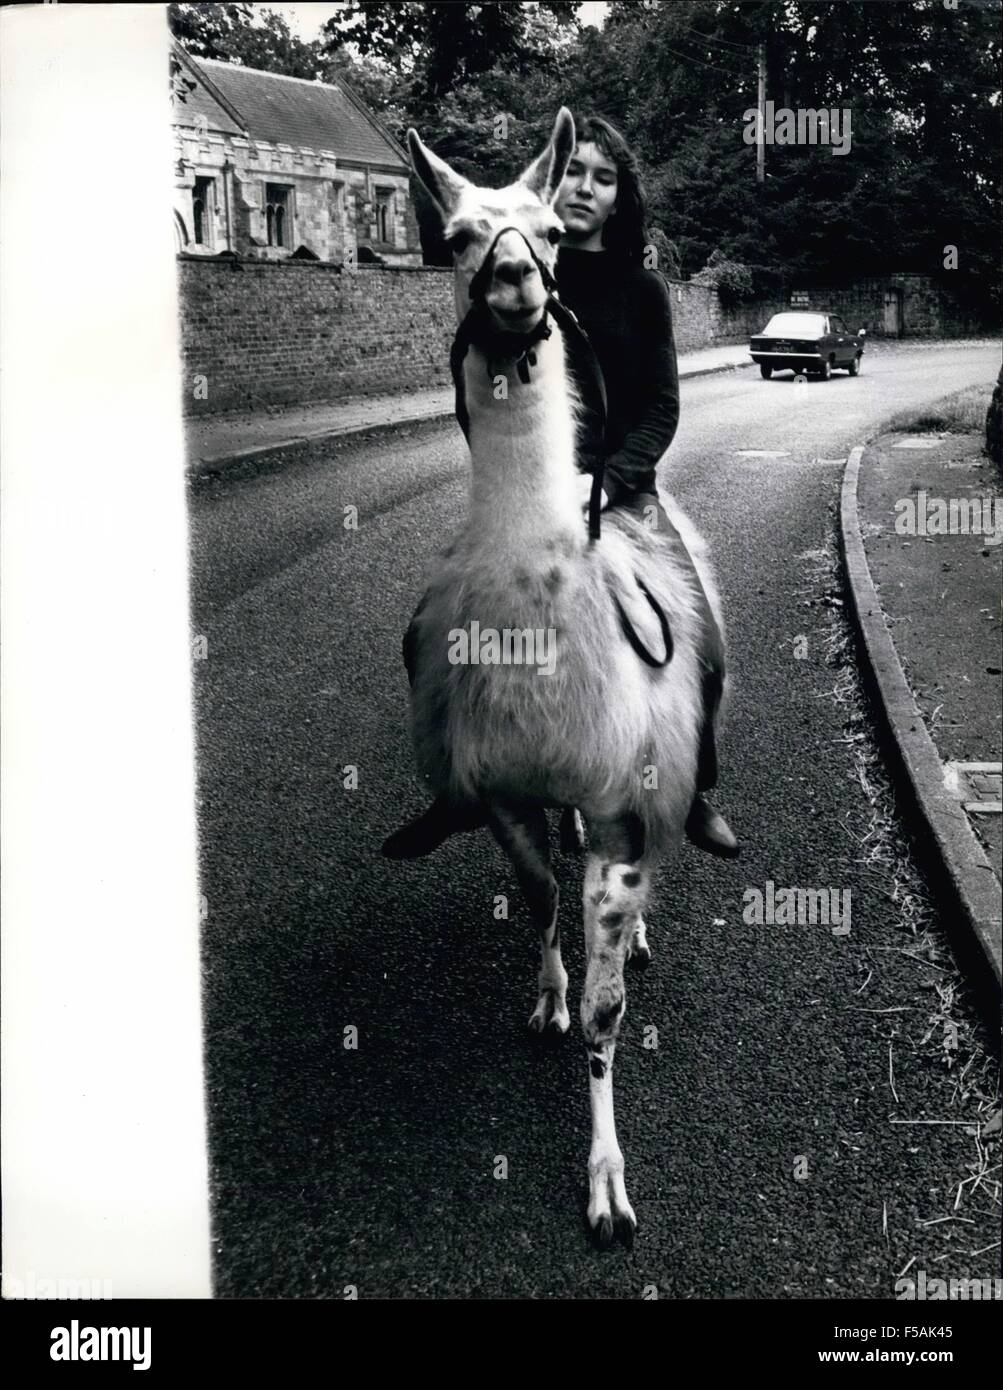 1968 - Julie Le Village - Par lama. Trottine sur la voies de Malton, Yorkshire sur sa monture, 15 ans, Julie Cook entraîne généralement tout à fait incorporer - car elle est montée, pas sur un cheval, mais sur un lama ! Le père de Julie a acheté la liberté, le lama pour &pound;150 à partir de la proximité de Flamingo Park Zoo comme animal de compagnie - et lui a promis à Julie de elle pourrait se briser en lui. Elle a maintenant été équitation, ou essayant de le monter depuis un an et a au moins réussi à lui enseigner à être obéissants - bien qu'il n'ont l'esprit de son ex, et aime faire son propre était occasionnellement . Julie sa vie entière consacrée à l'un Banque D'Images